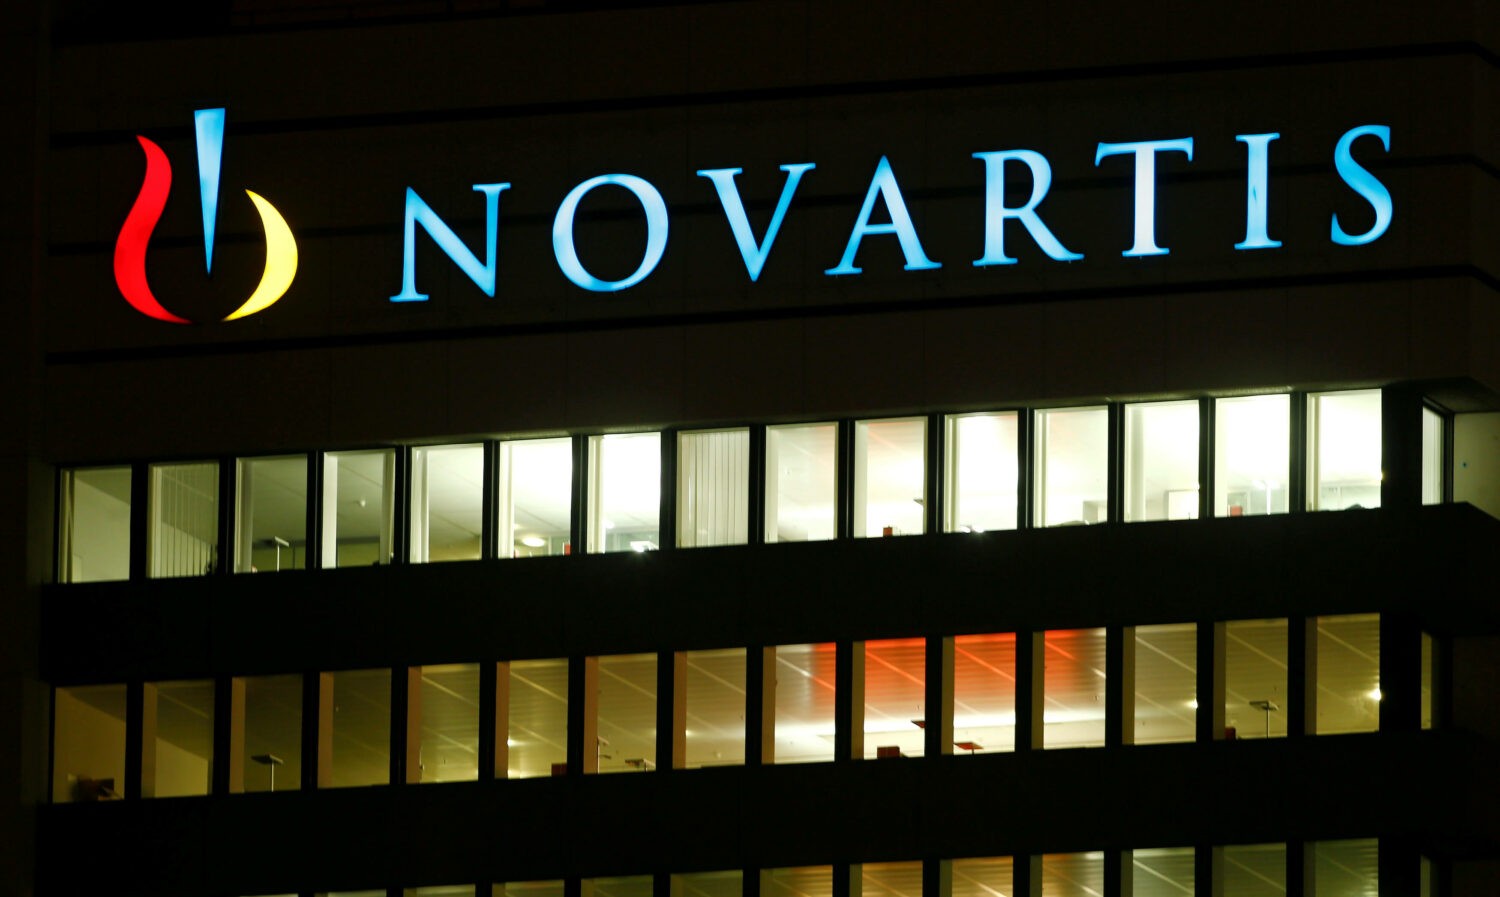 Νovartis: Παρέμβαση εισαγγελέα για Λοβέρδο και FBI - Αλλοιώθηκε το έγγραφο;